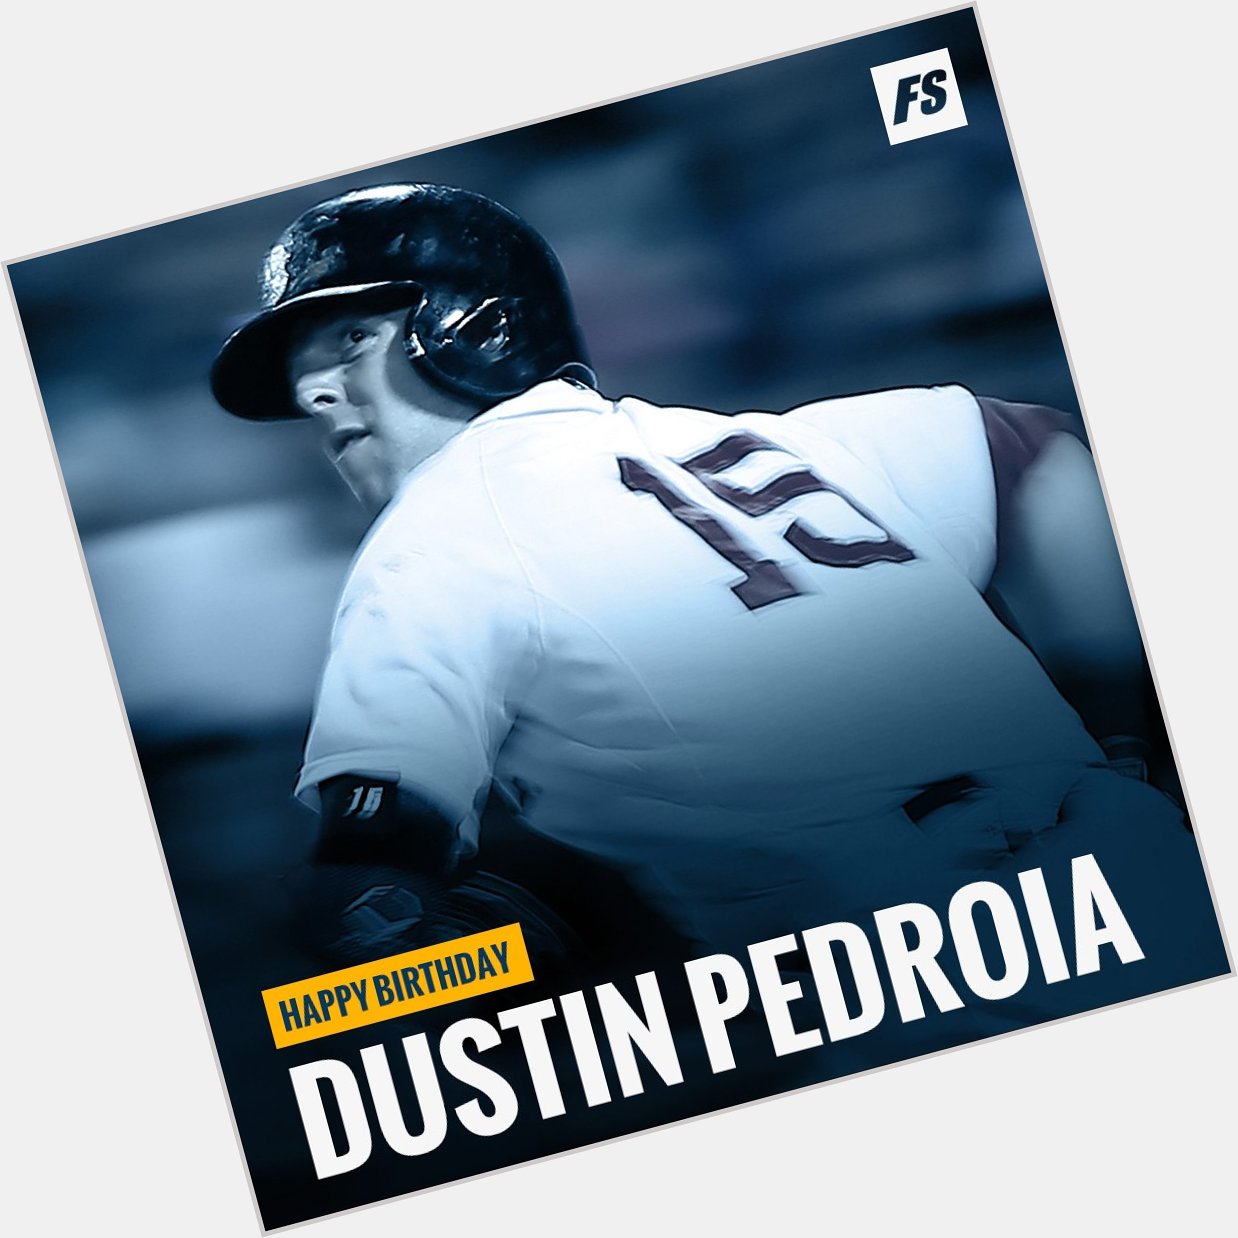 Happy birthday to Boston second baseman Dustin Pedroia 